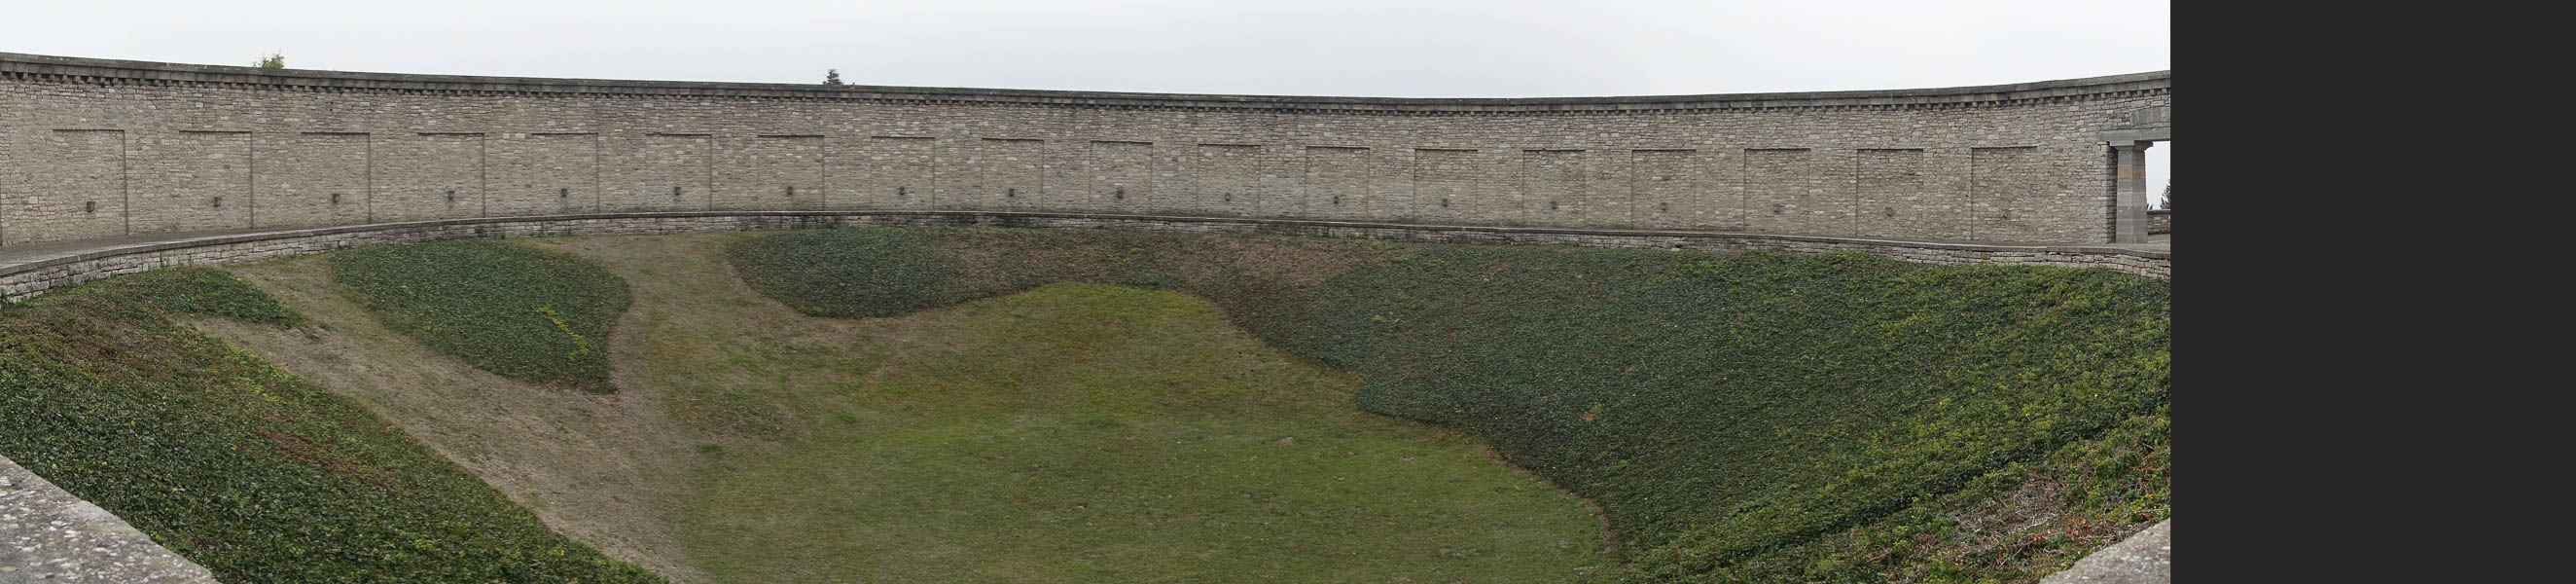 ehemalige Erdfälle - Ringgräber für ermordete Buchnewald-Häftlinge